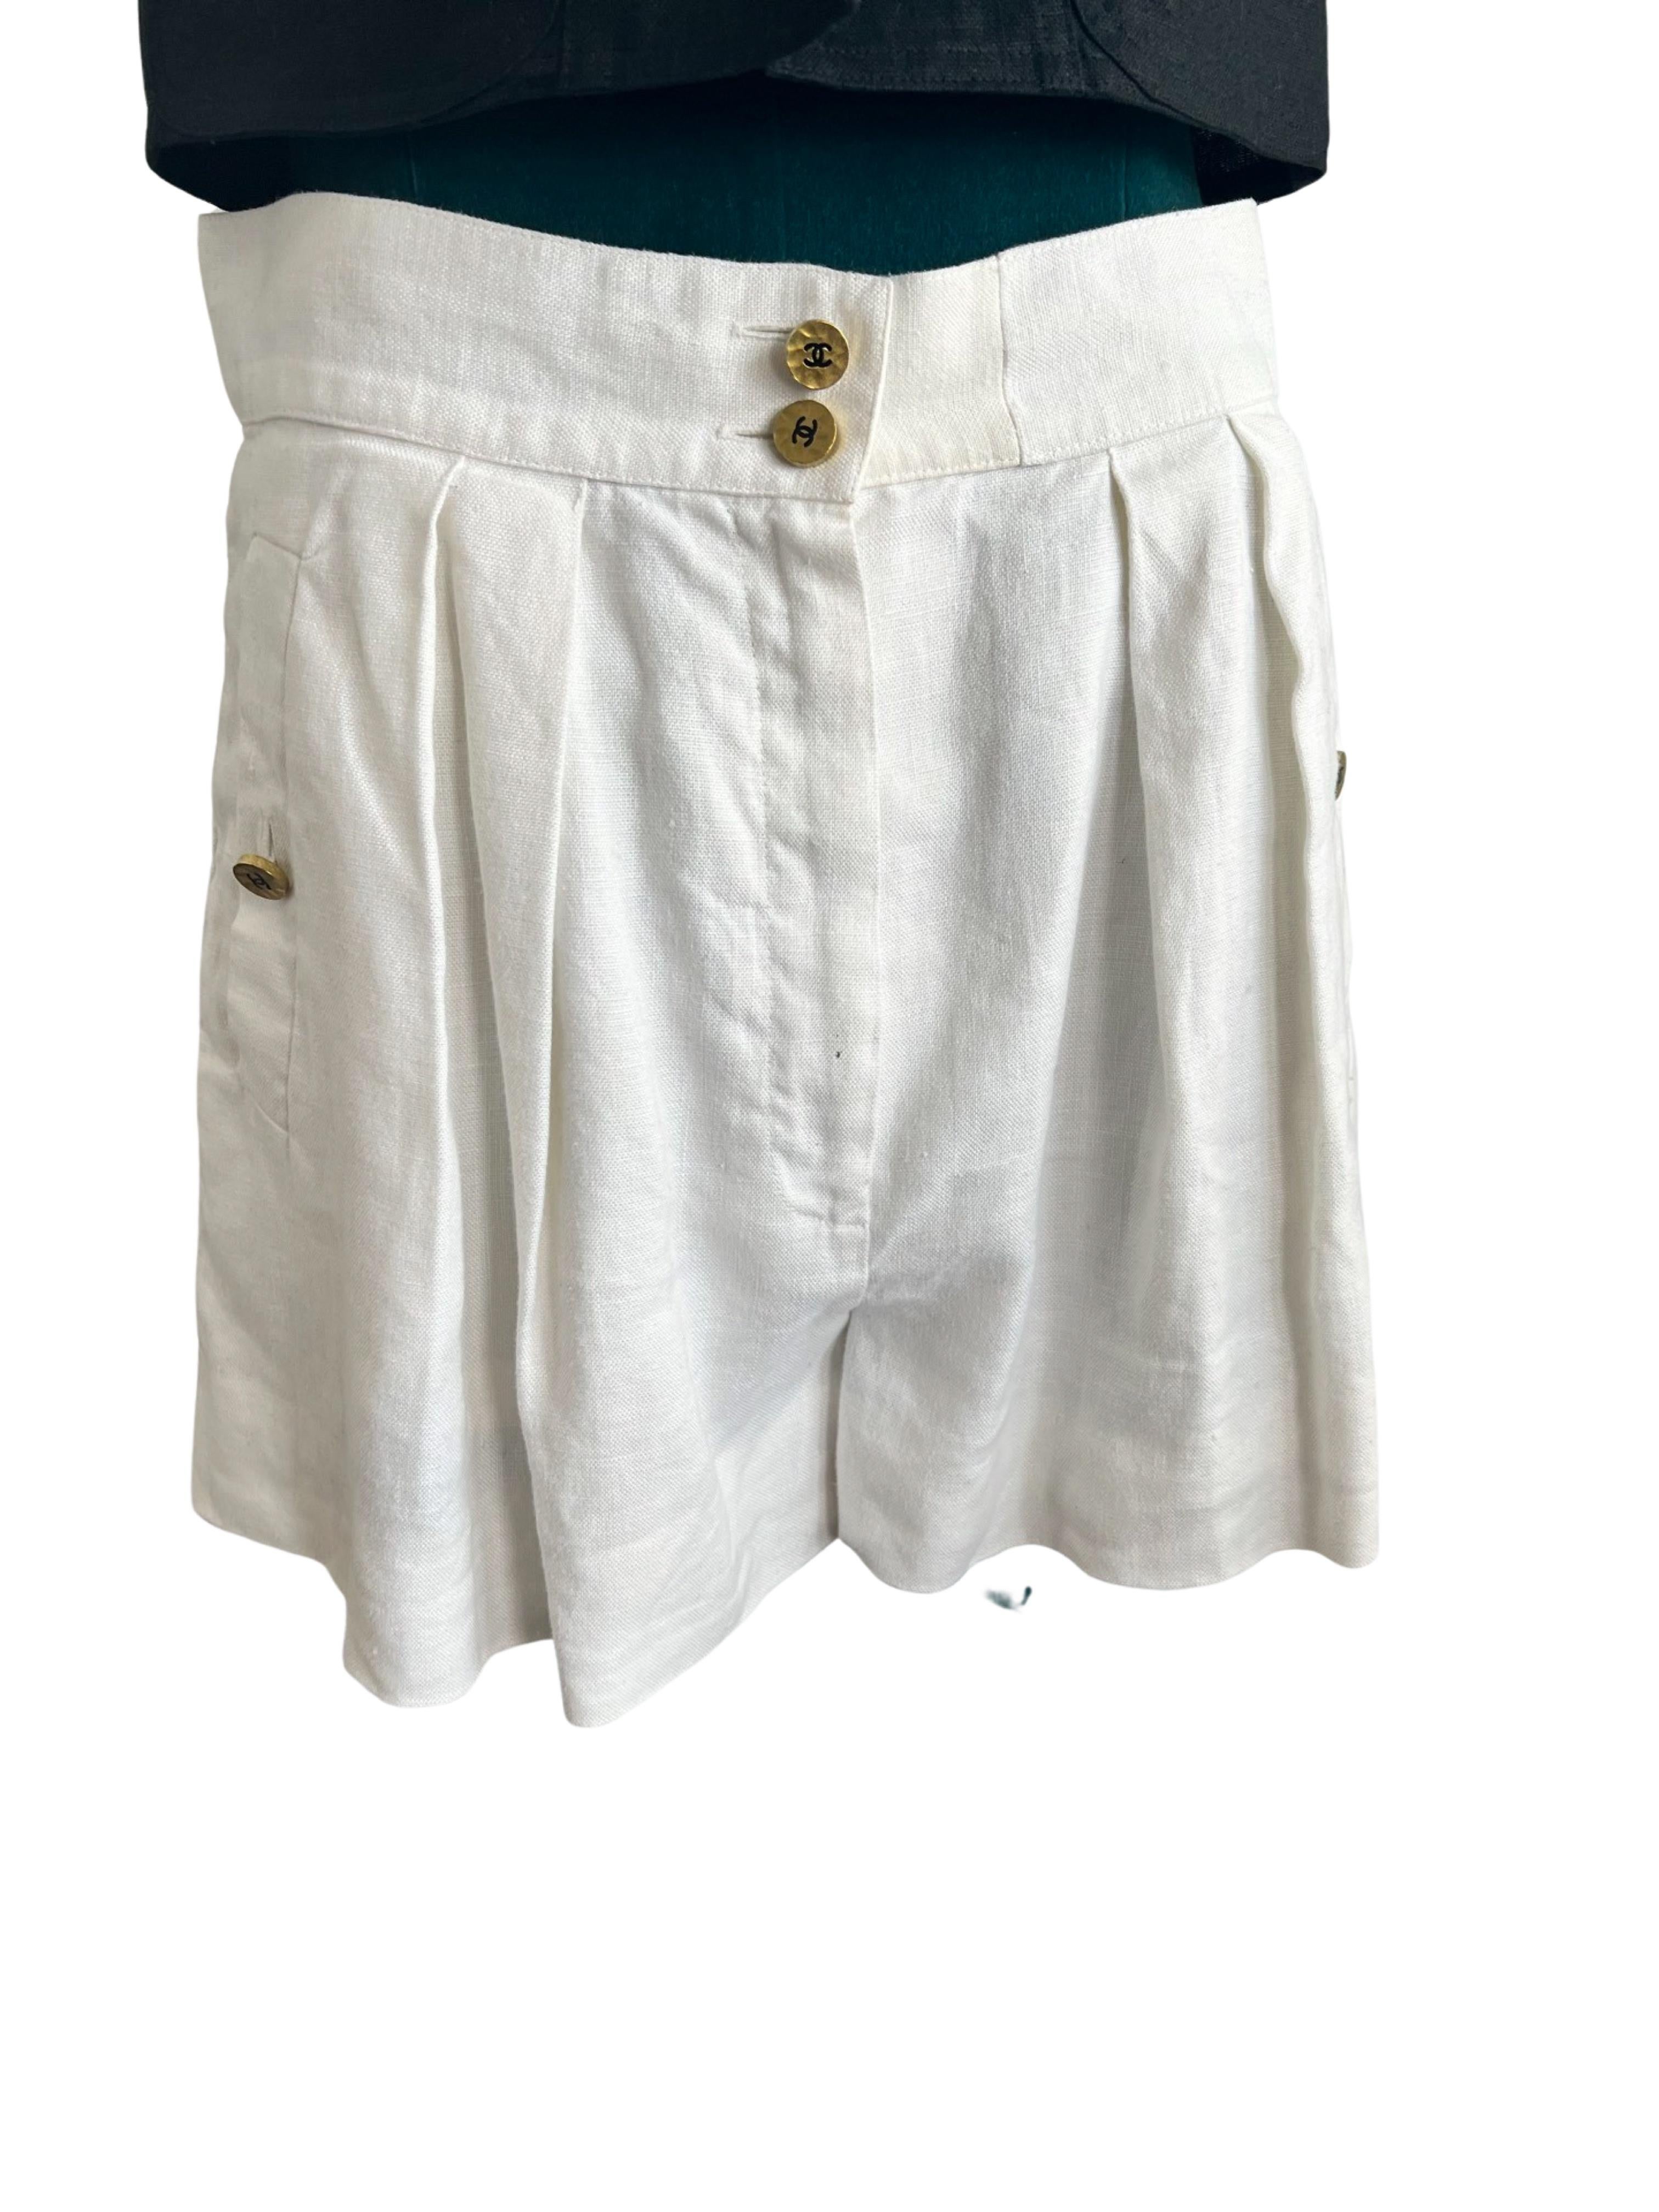 Lassen Sie sich von der Nostalgie der 90er Jahre anstecken - mit diesen schicken Shorts von Chanel mit weißer Linie. Diese Shorts verströmen die klassische Chanel-Ästhetik und vereinen Komfort, Stil und Luxus. Hier sind die wichtigsten Merkmale